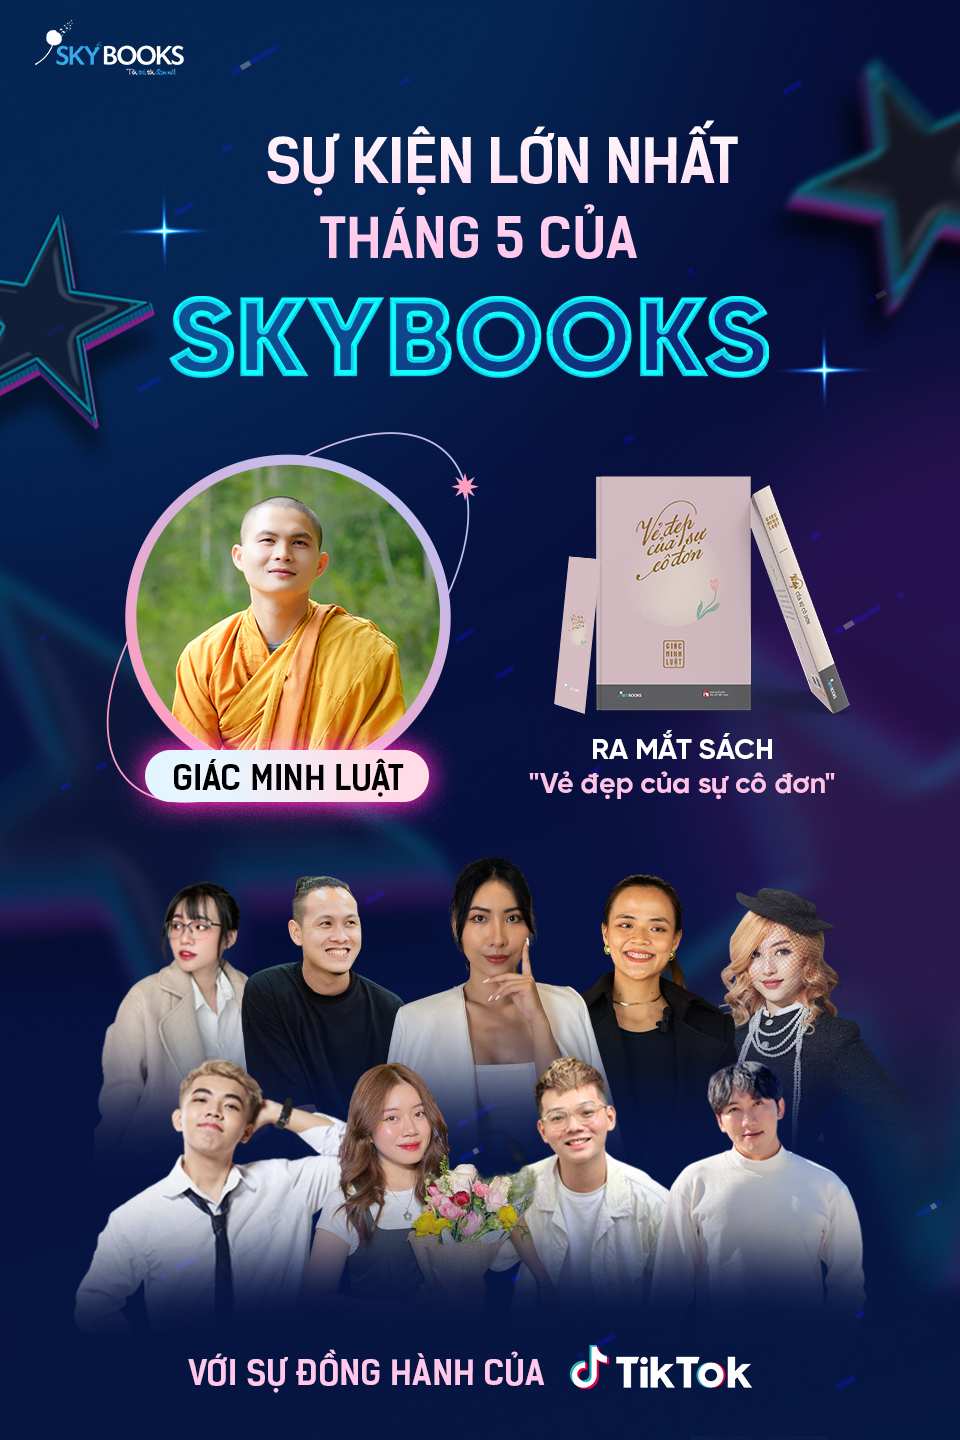 Sự kiện đặc biệt trong tháng 5 của Skybooks với sự đồng hành của TIKTOK Việt Nam